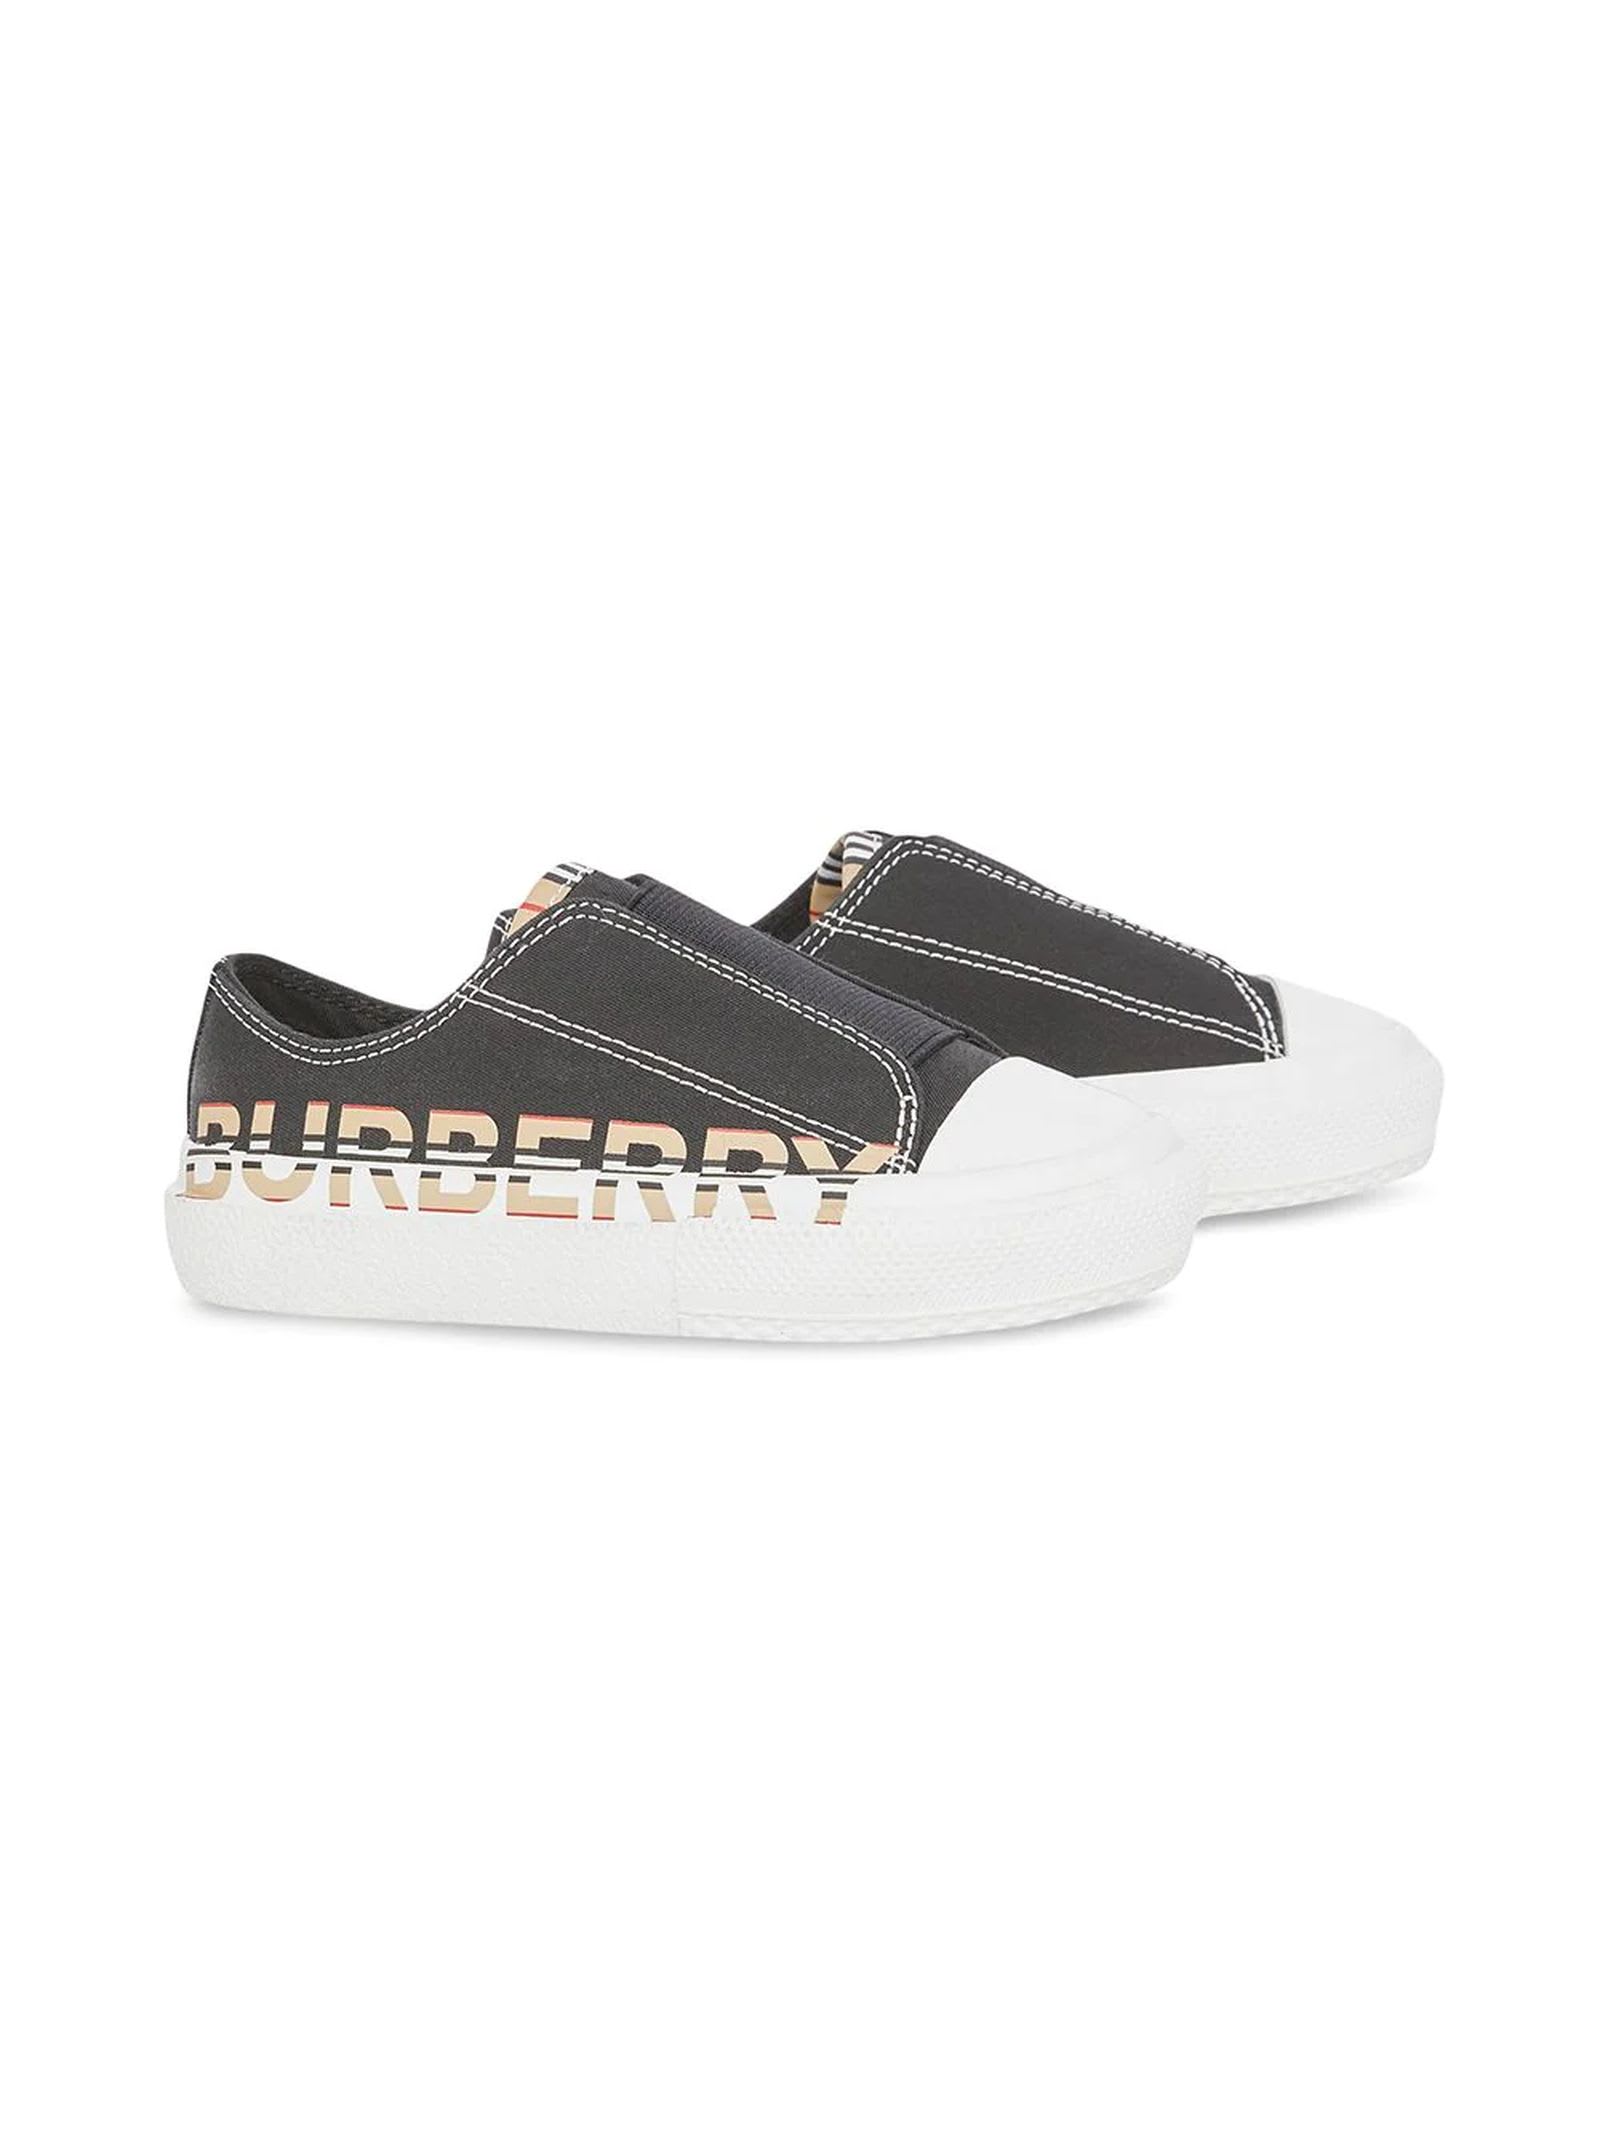 Burberry Black Kids Sneakers